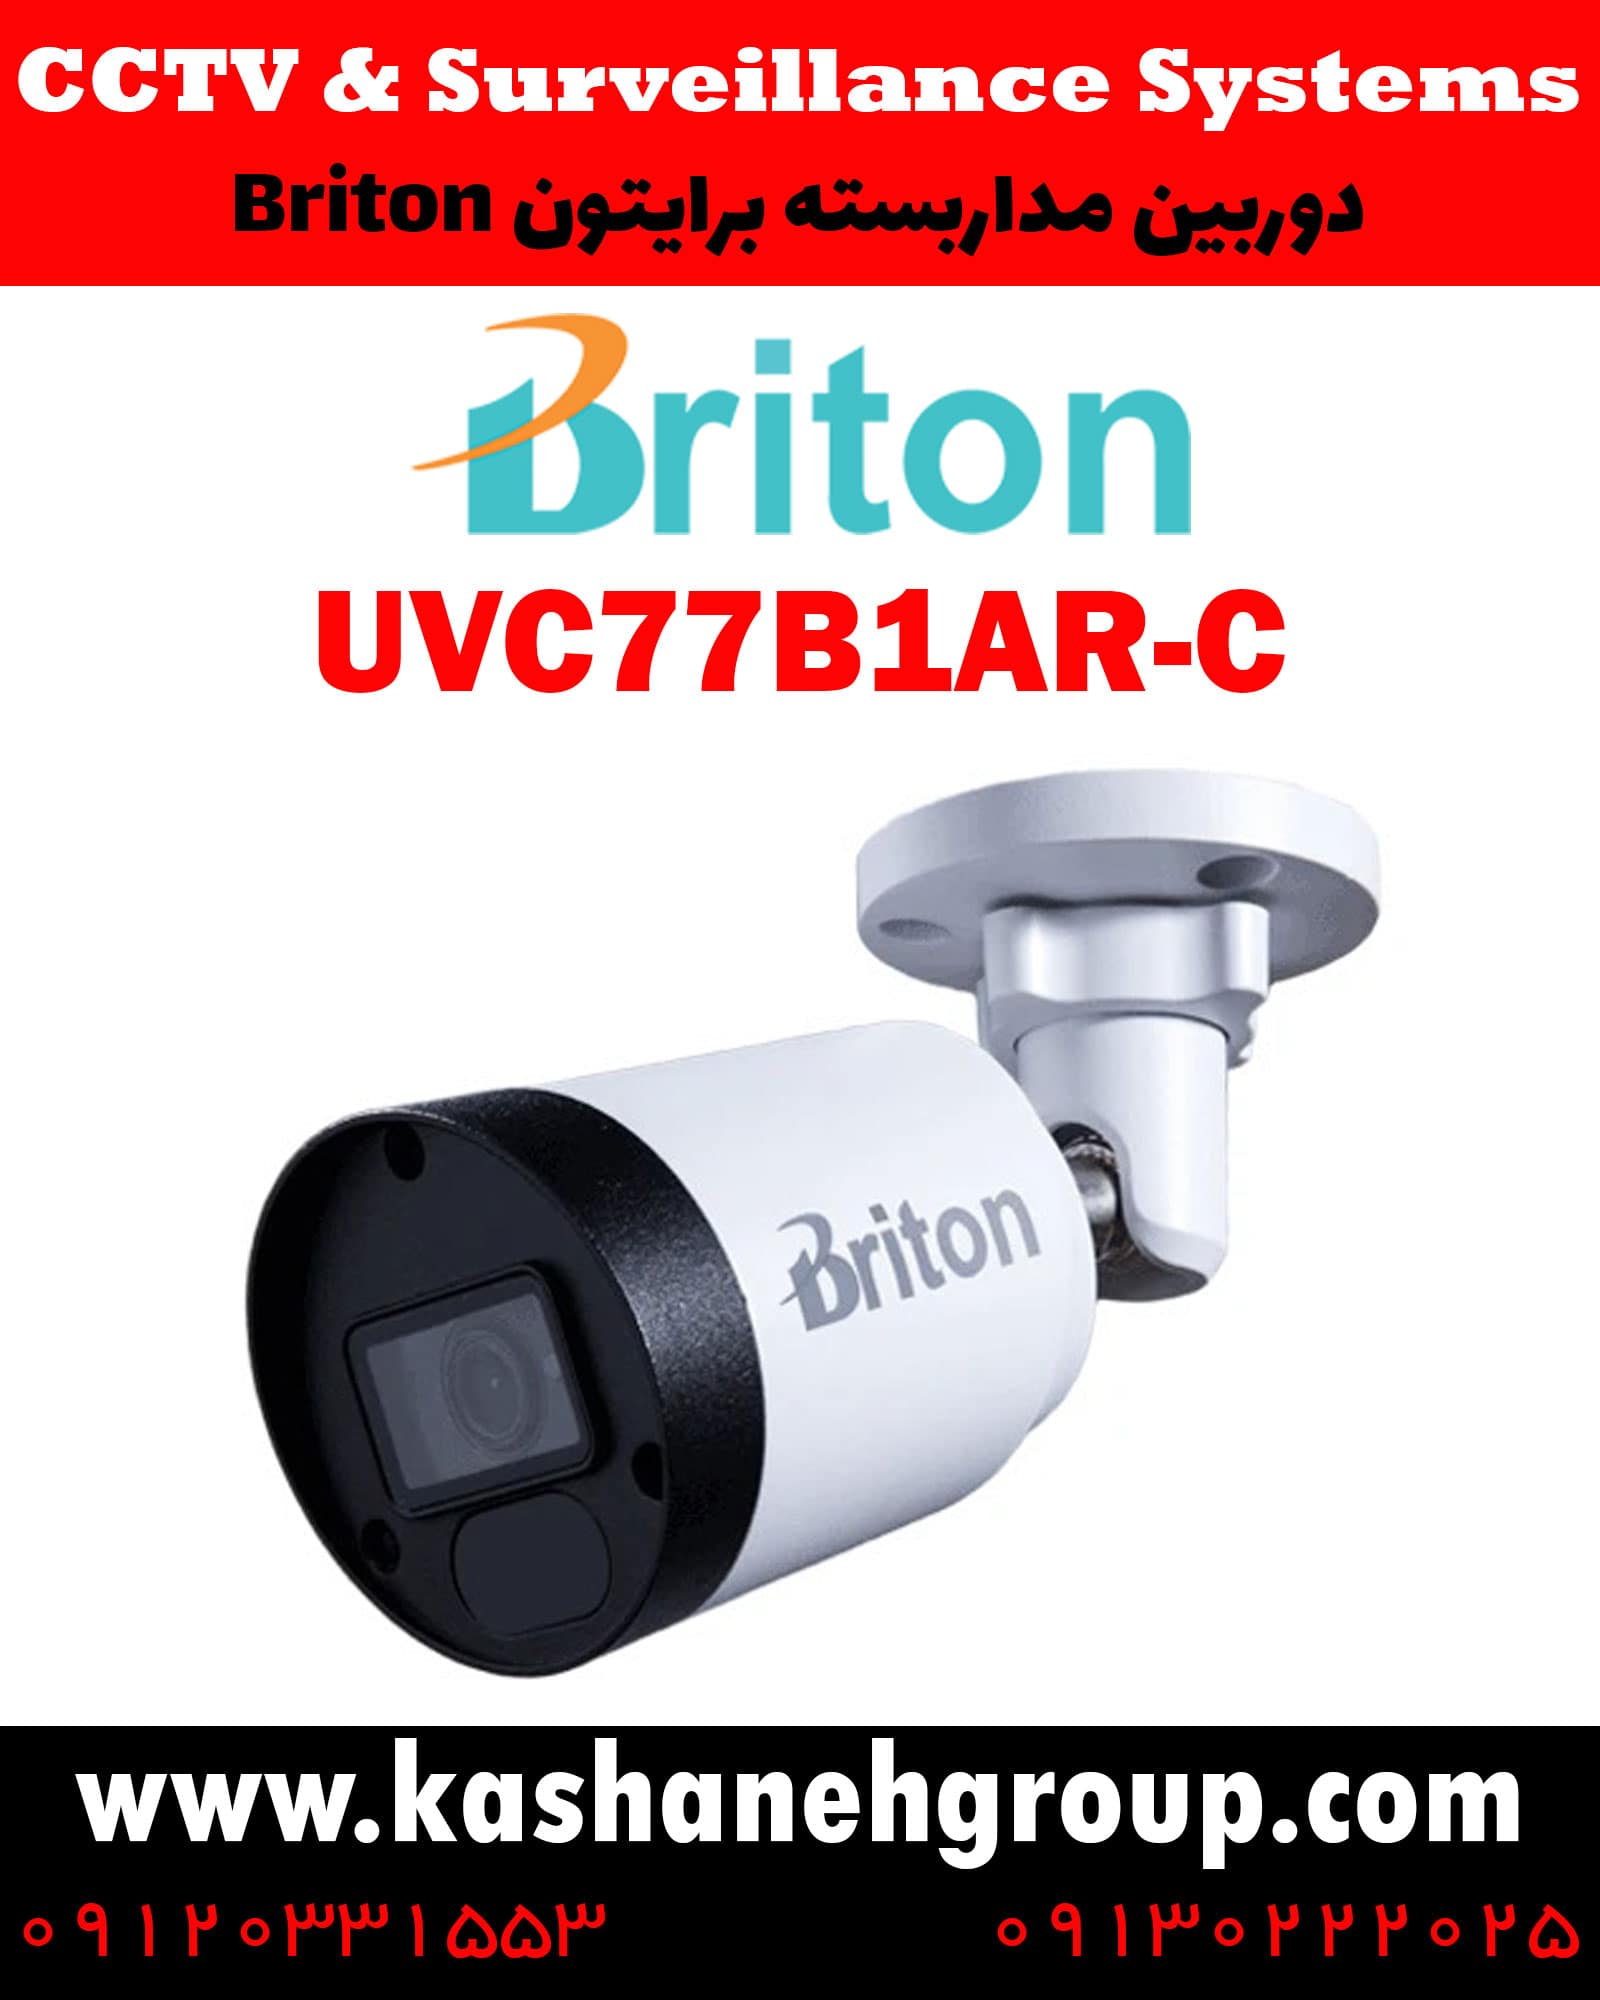 دوربین مداربسته UVC77B1AR-C، دوربین مداربسته برایتون UVC77B1AR-C، دوربین مداربسته Briton UVC77B1AR-C، دوربین برایتون UVC77B1AR-C، قیمت دوربین برایتون، نرم افزار برایتون، تعمیر دوربین برایتون، نمایندگی برایتون، نماینده برایتون، قیمت دوربین برایتون، مشخصات دوربین UVC77B1AR-C، قیمت دوربین برایتون UVC77B1AR-C، قیمت دوربین UVC77B1AR-C برایتون، پک دوربین برایتون، پک دوربین مداربسته برایتون، دوربین Briton، دوربین مداربسته برایتون Briton UVC77B1AR-C ، نماینده دوربین Briton، نمایندگی دوربین Briton، نرم افزار موبایل دوربین مداربسته Briton